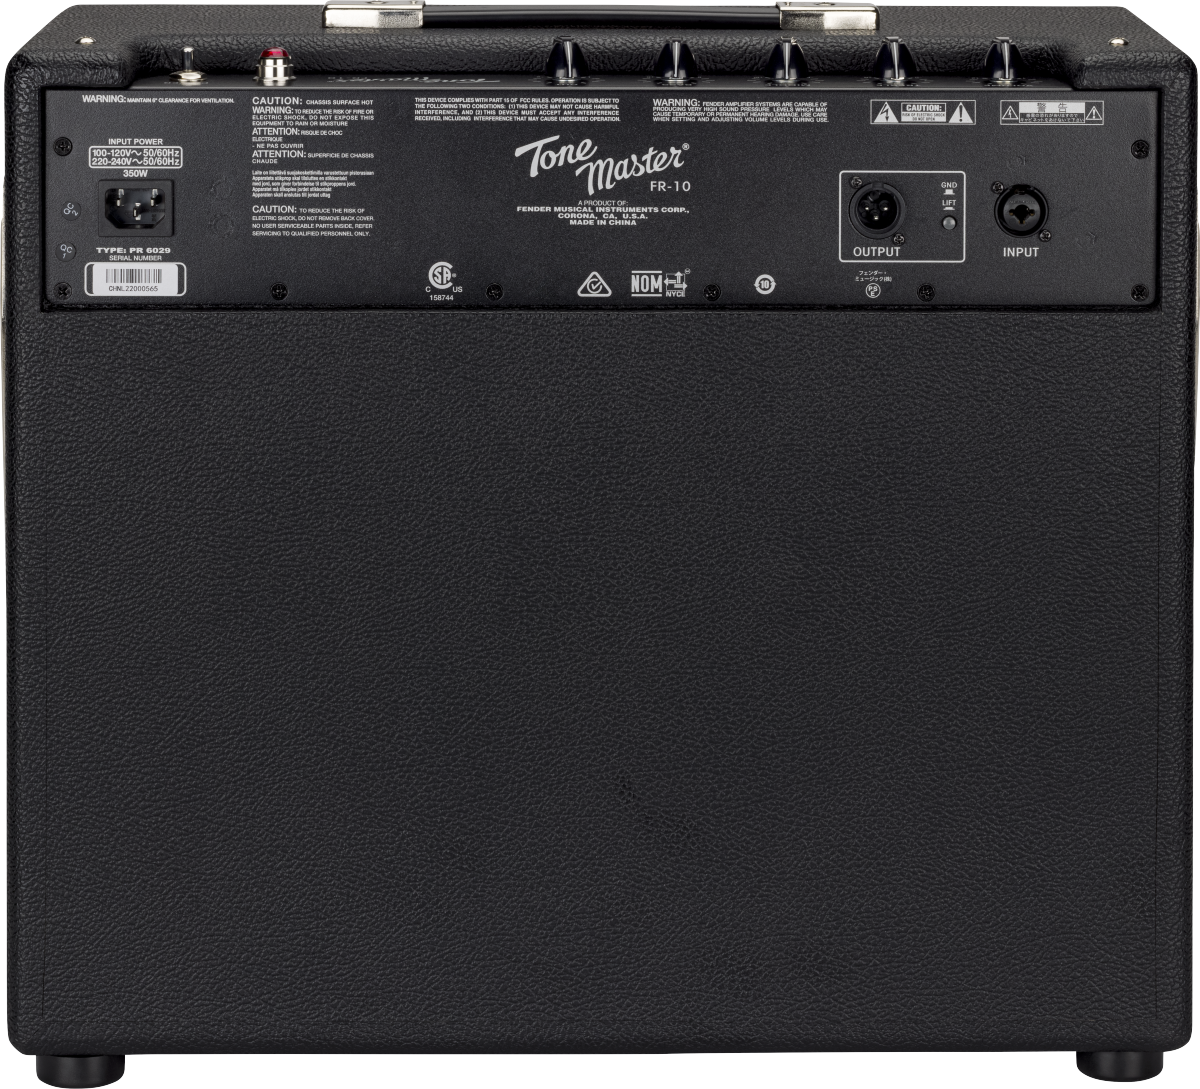 Fender Tone Master FR-10 1x10 1,000 Watt Class-D Power Amp 2275100000